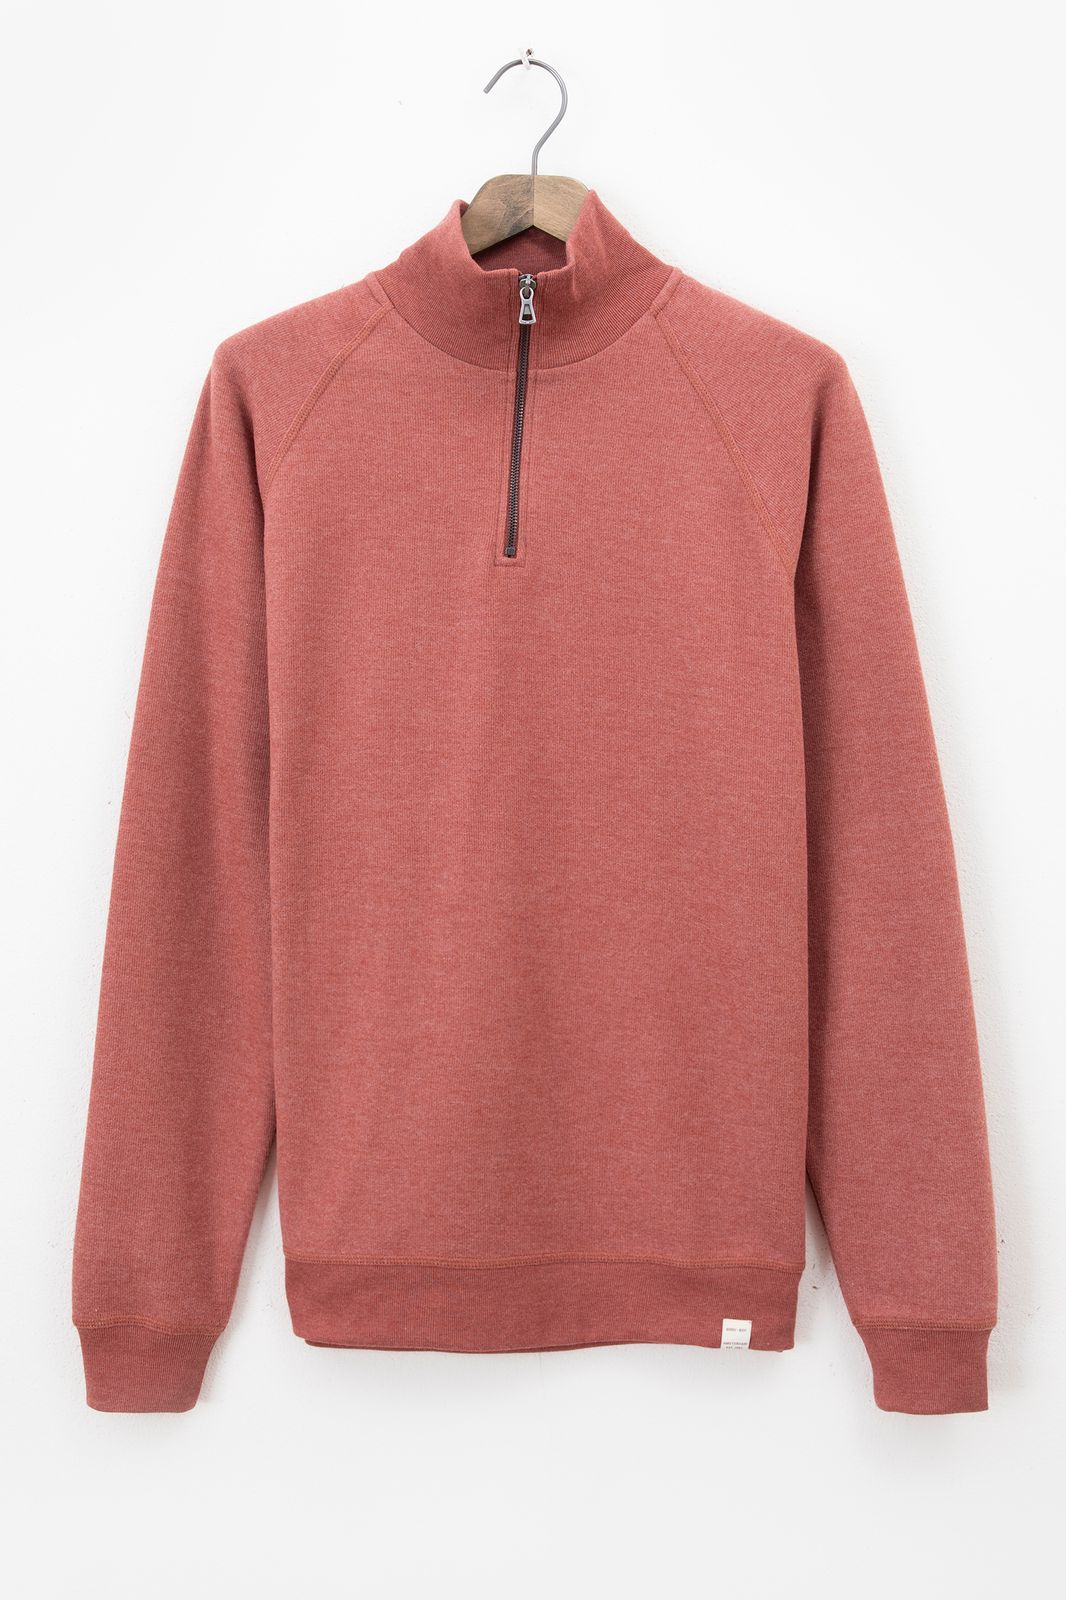 Raglan-Sweater mit Reißverschluss - rot